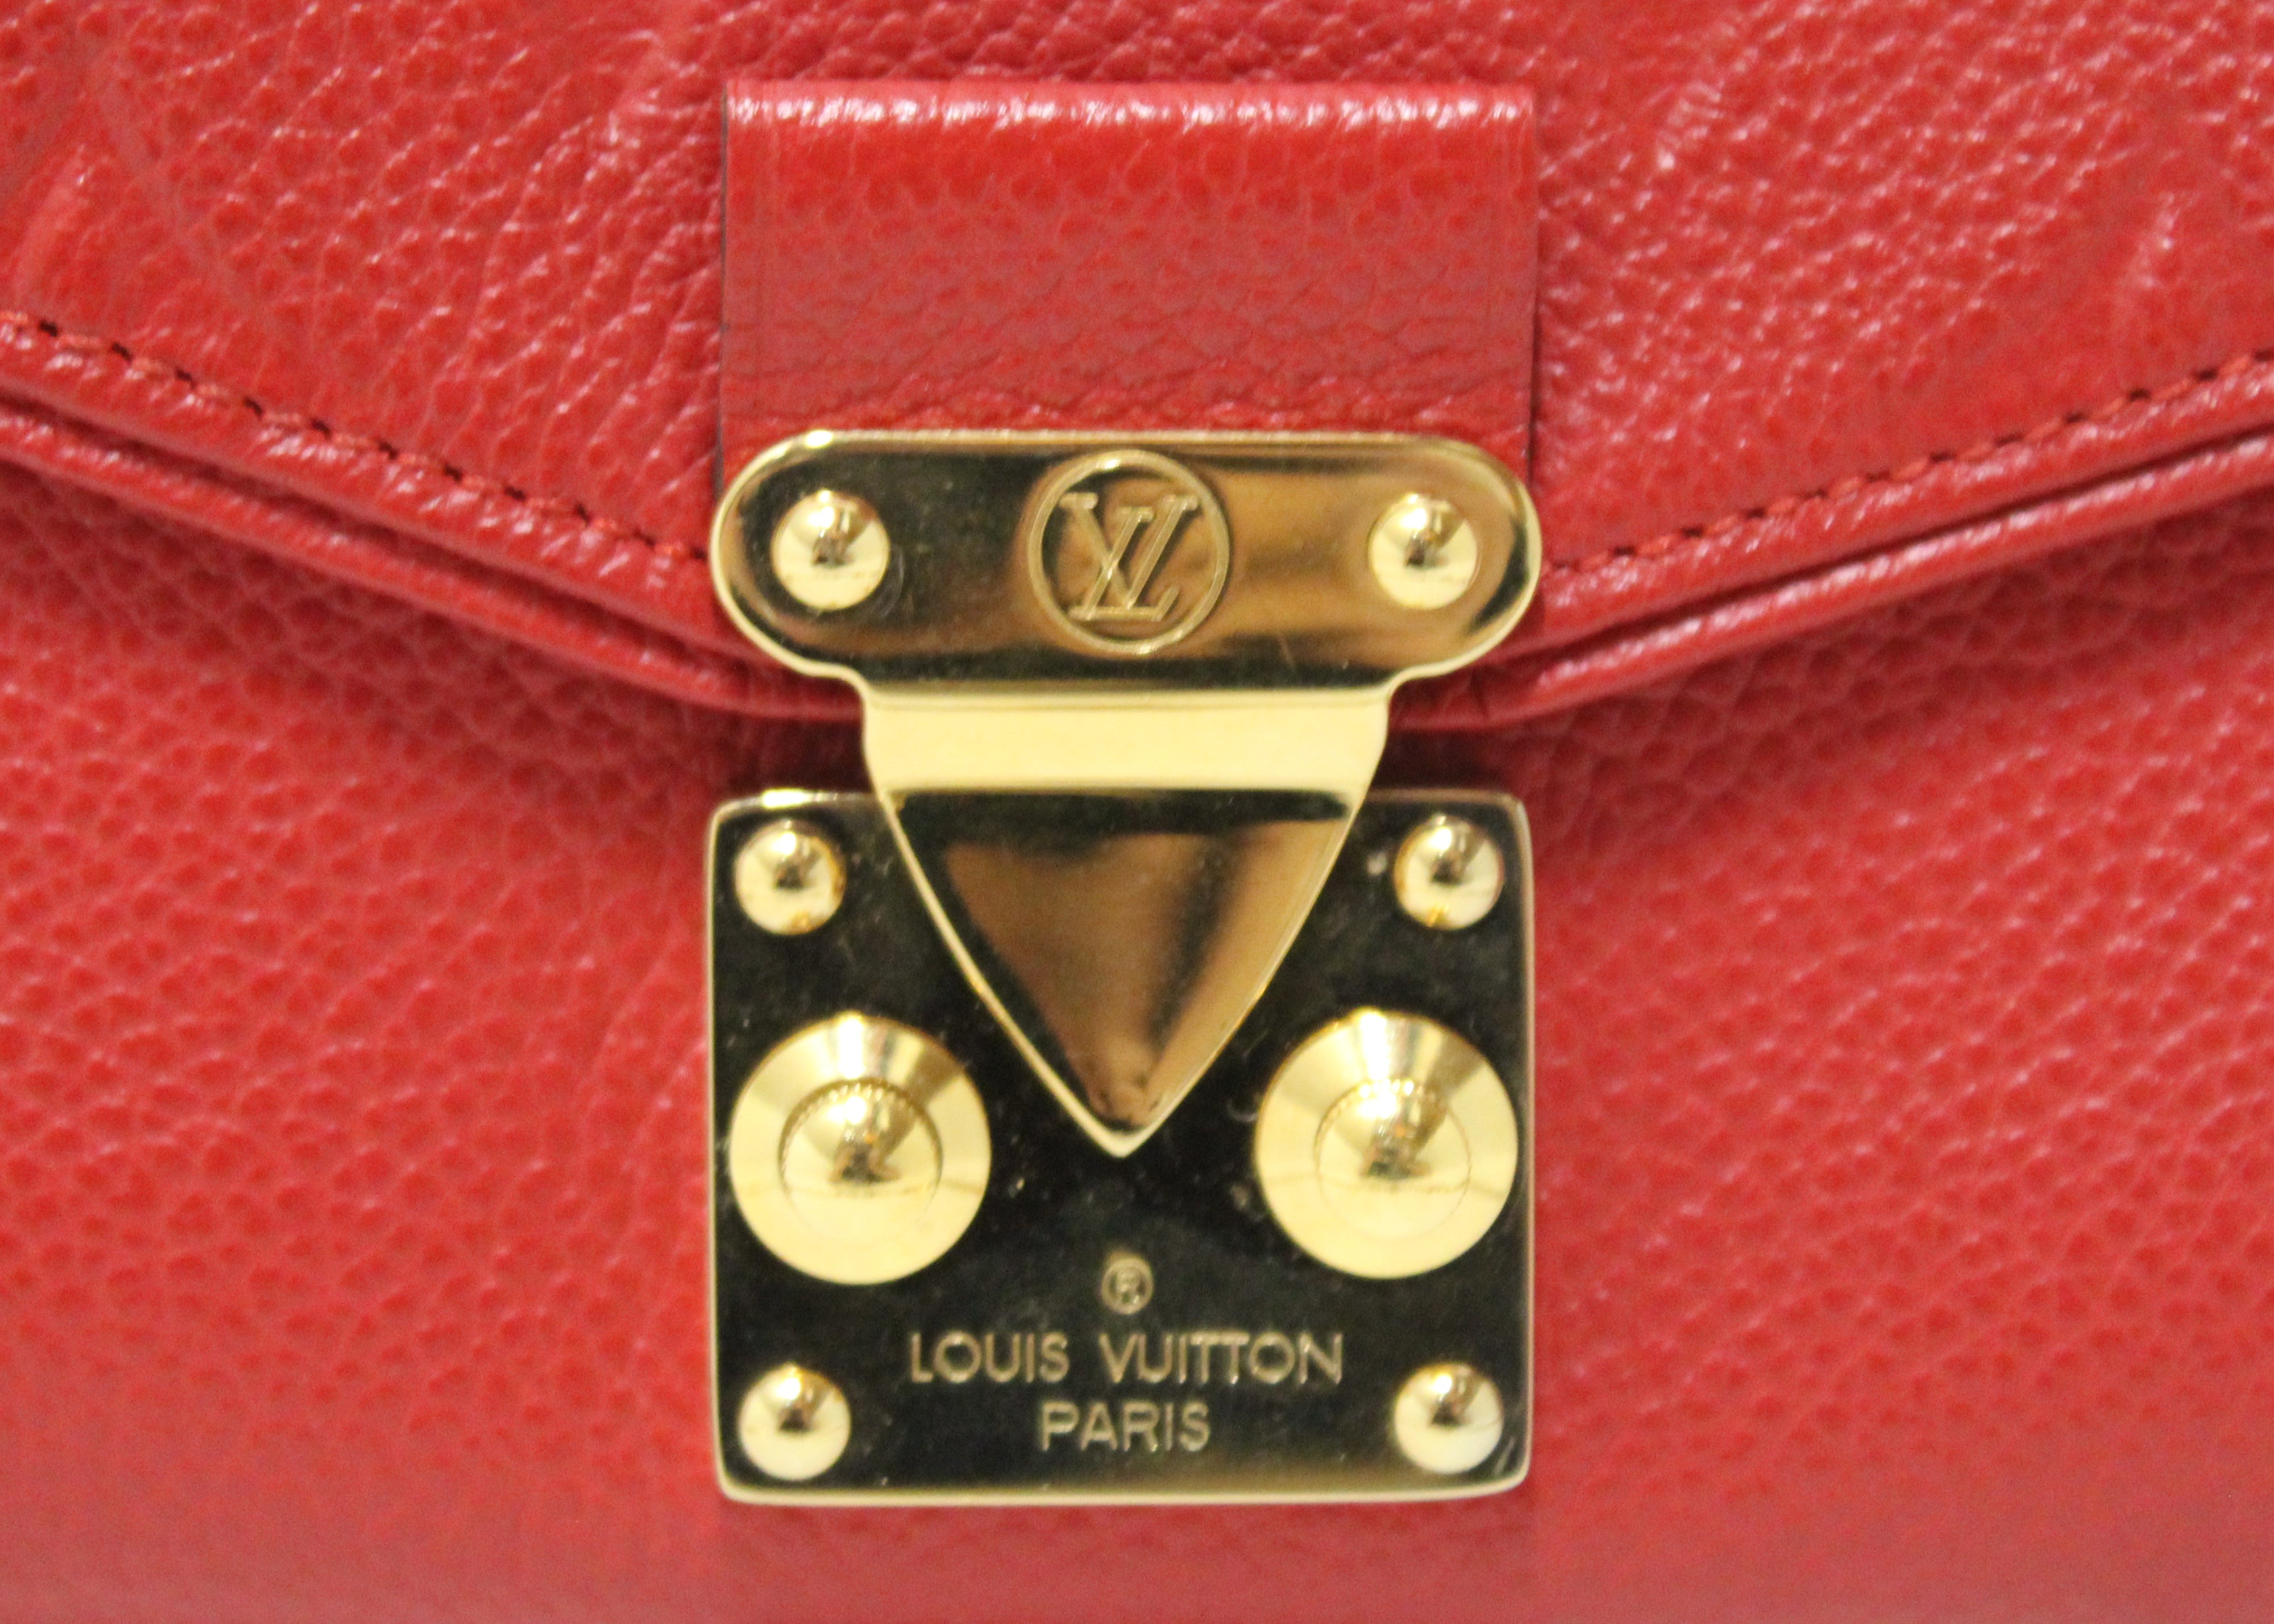 Preloved Louis Vuitton Saint Germain Red Monogram Empreinte